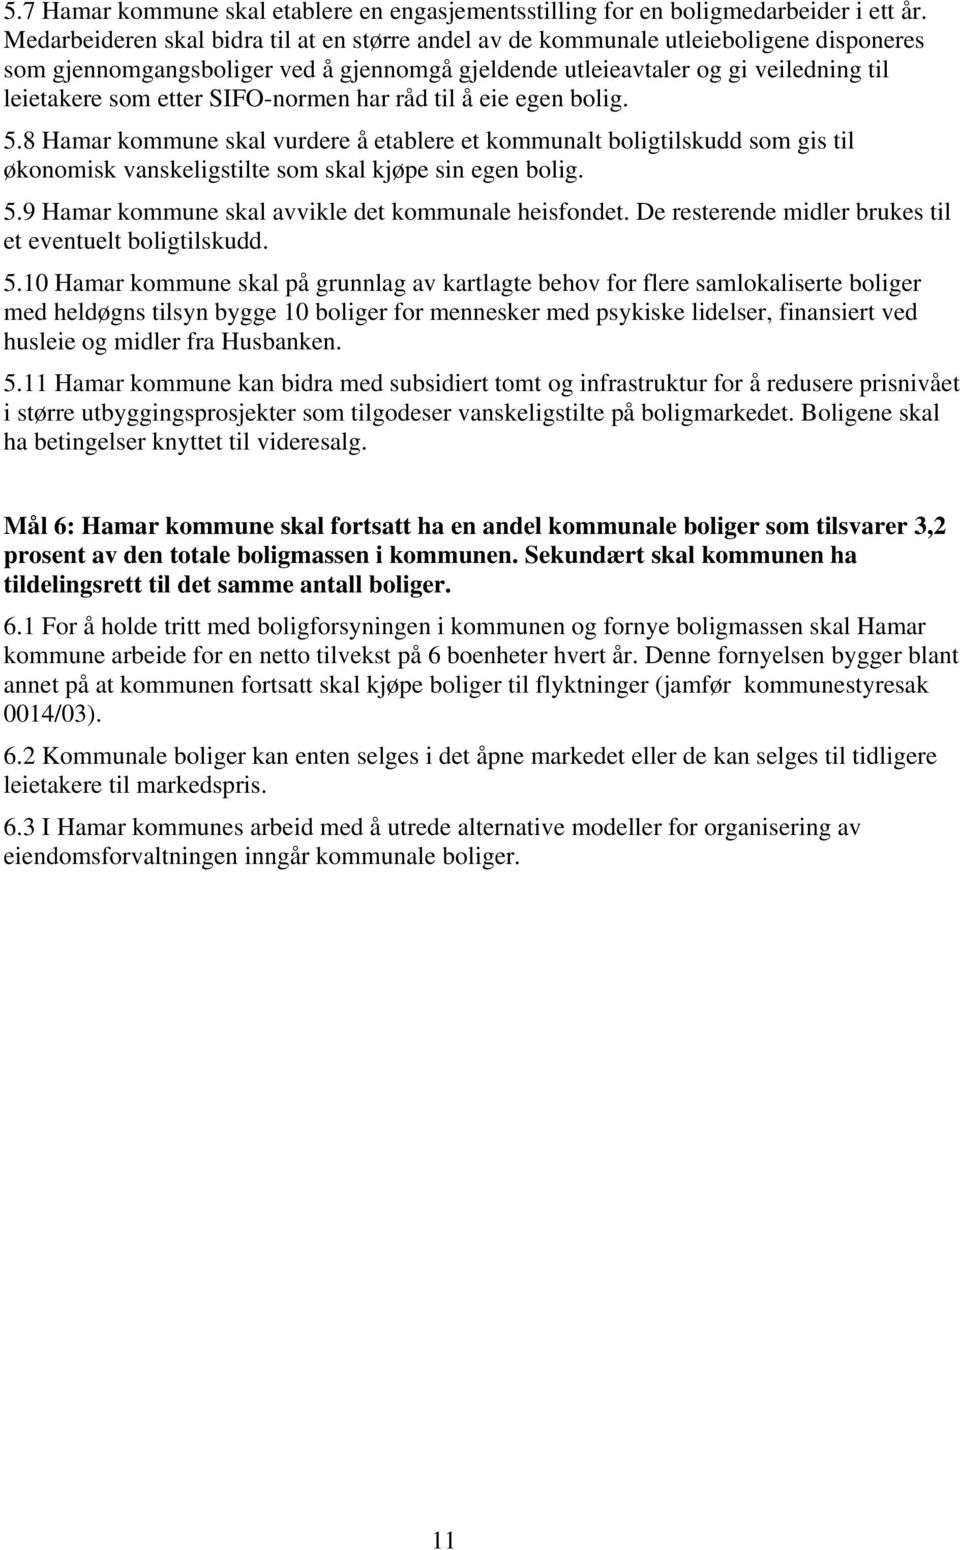 SIFO-normen har råd til å eie egen bolig. 5.8 Hamar kommune skal vurdere å etablere et kommunalt boligtilskudd som gis til økonomisk vanskeligstilte som skal kjøpe sin egen bolig. 5.9 Hamar kommune skal avvikle det kommunale heisfondet.